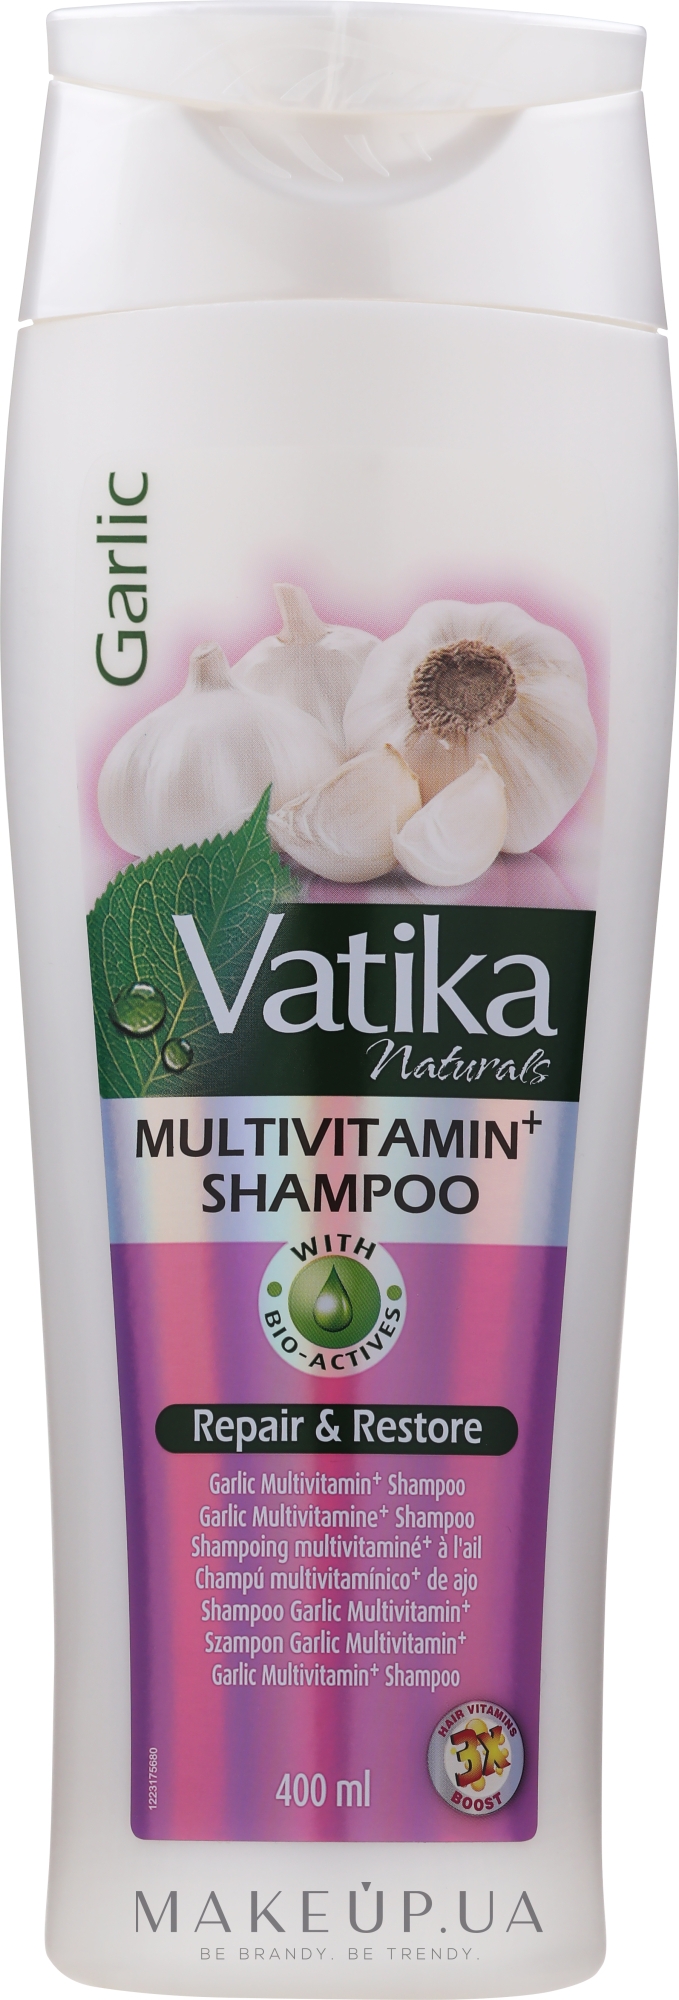 Мультивитаминный шампунь с экстрактом чеснока - Dabur Vatika Garlic Multivitamin+ Shampoo Repair & Restore — фото 400ml